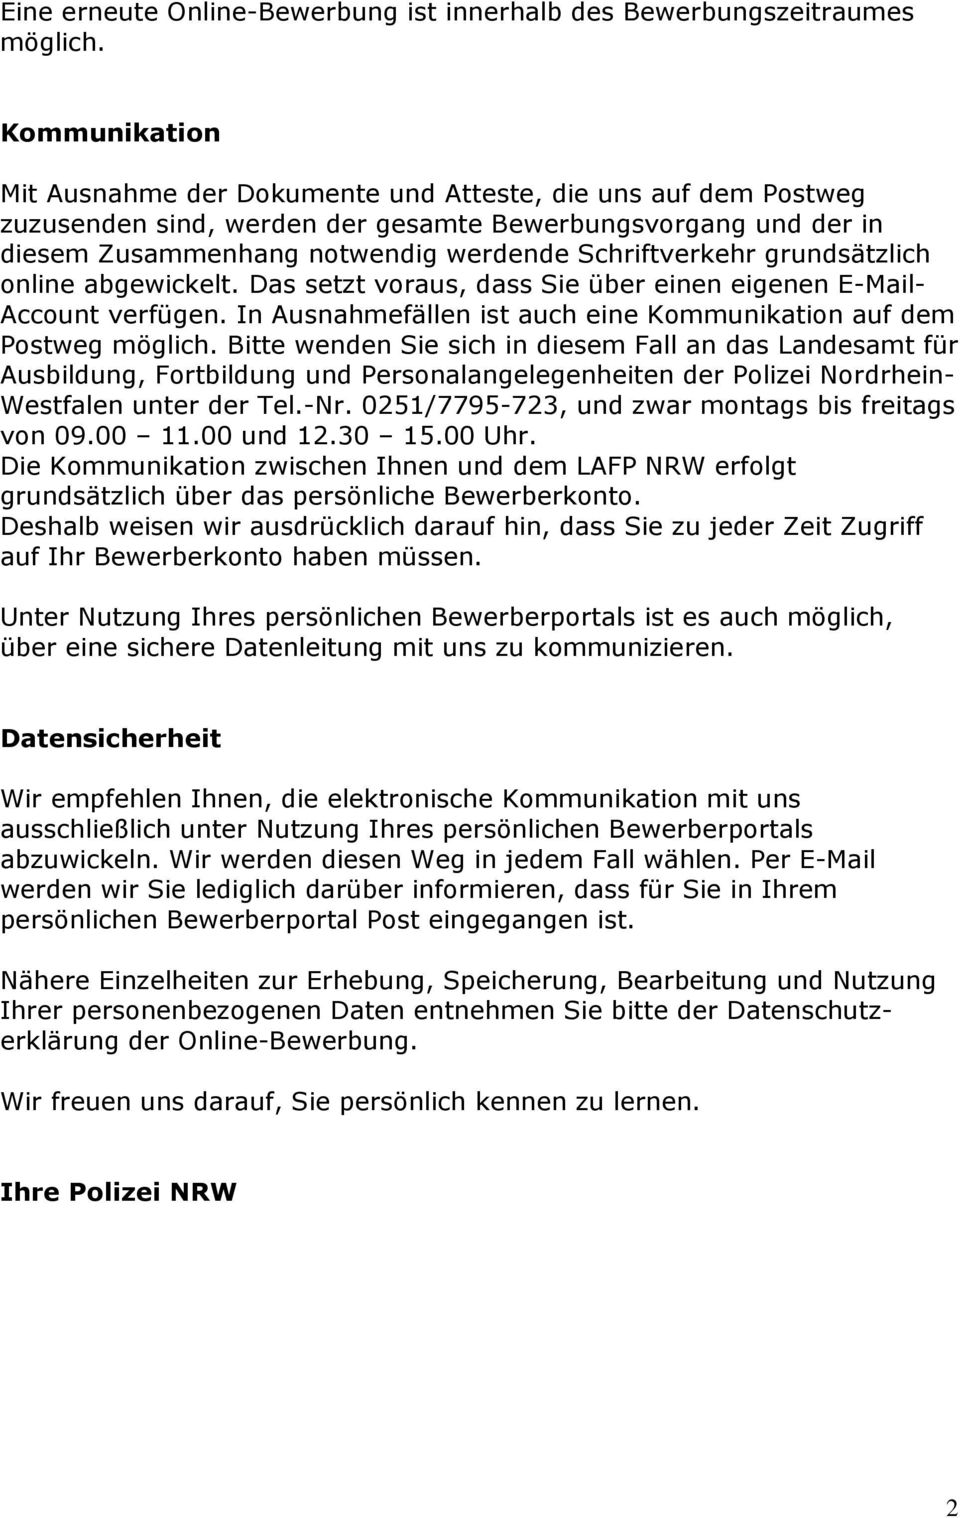 Bewerbung Deckblatt Muster Streifenwagen Der Polizei Hessen